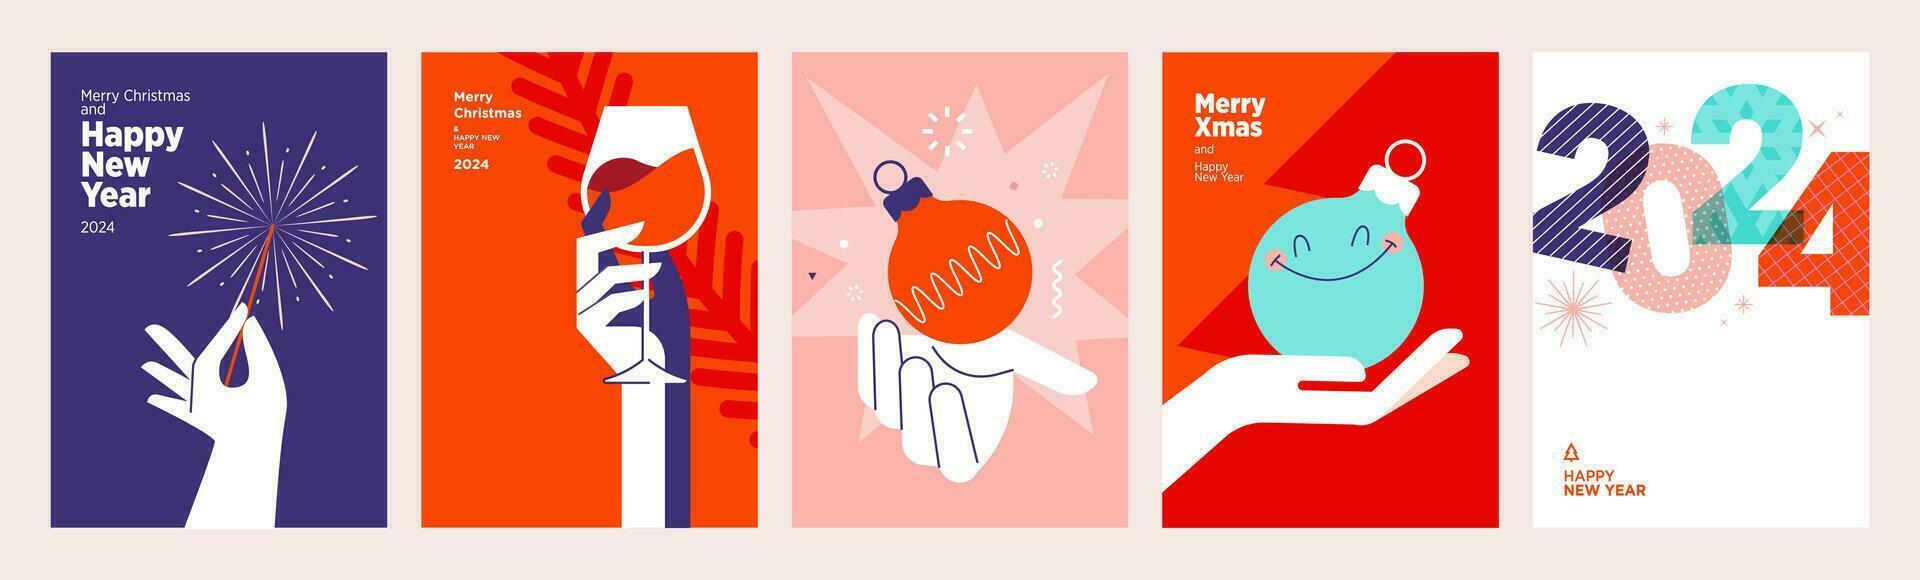 2024 vrolijk Kerstmis en gelukkig nieuw jaar groet kaarten set. vector illustratie concepten voor achtergrond, groet kaart, partij uitnodiging kaart, website banier, sociaal media banier, afzet materiaal.